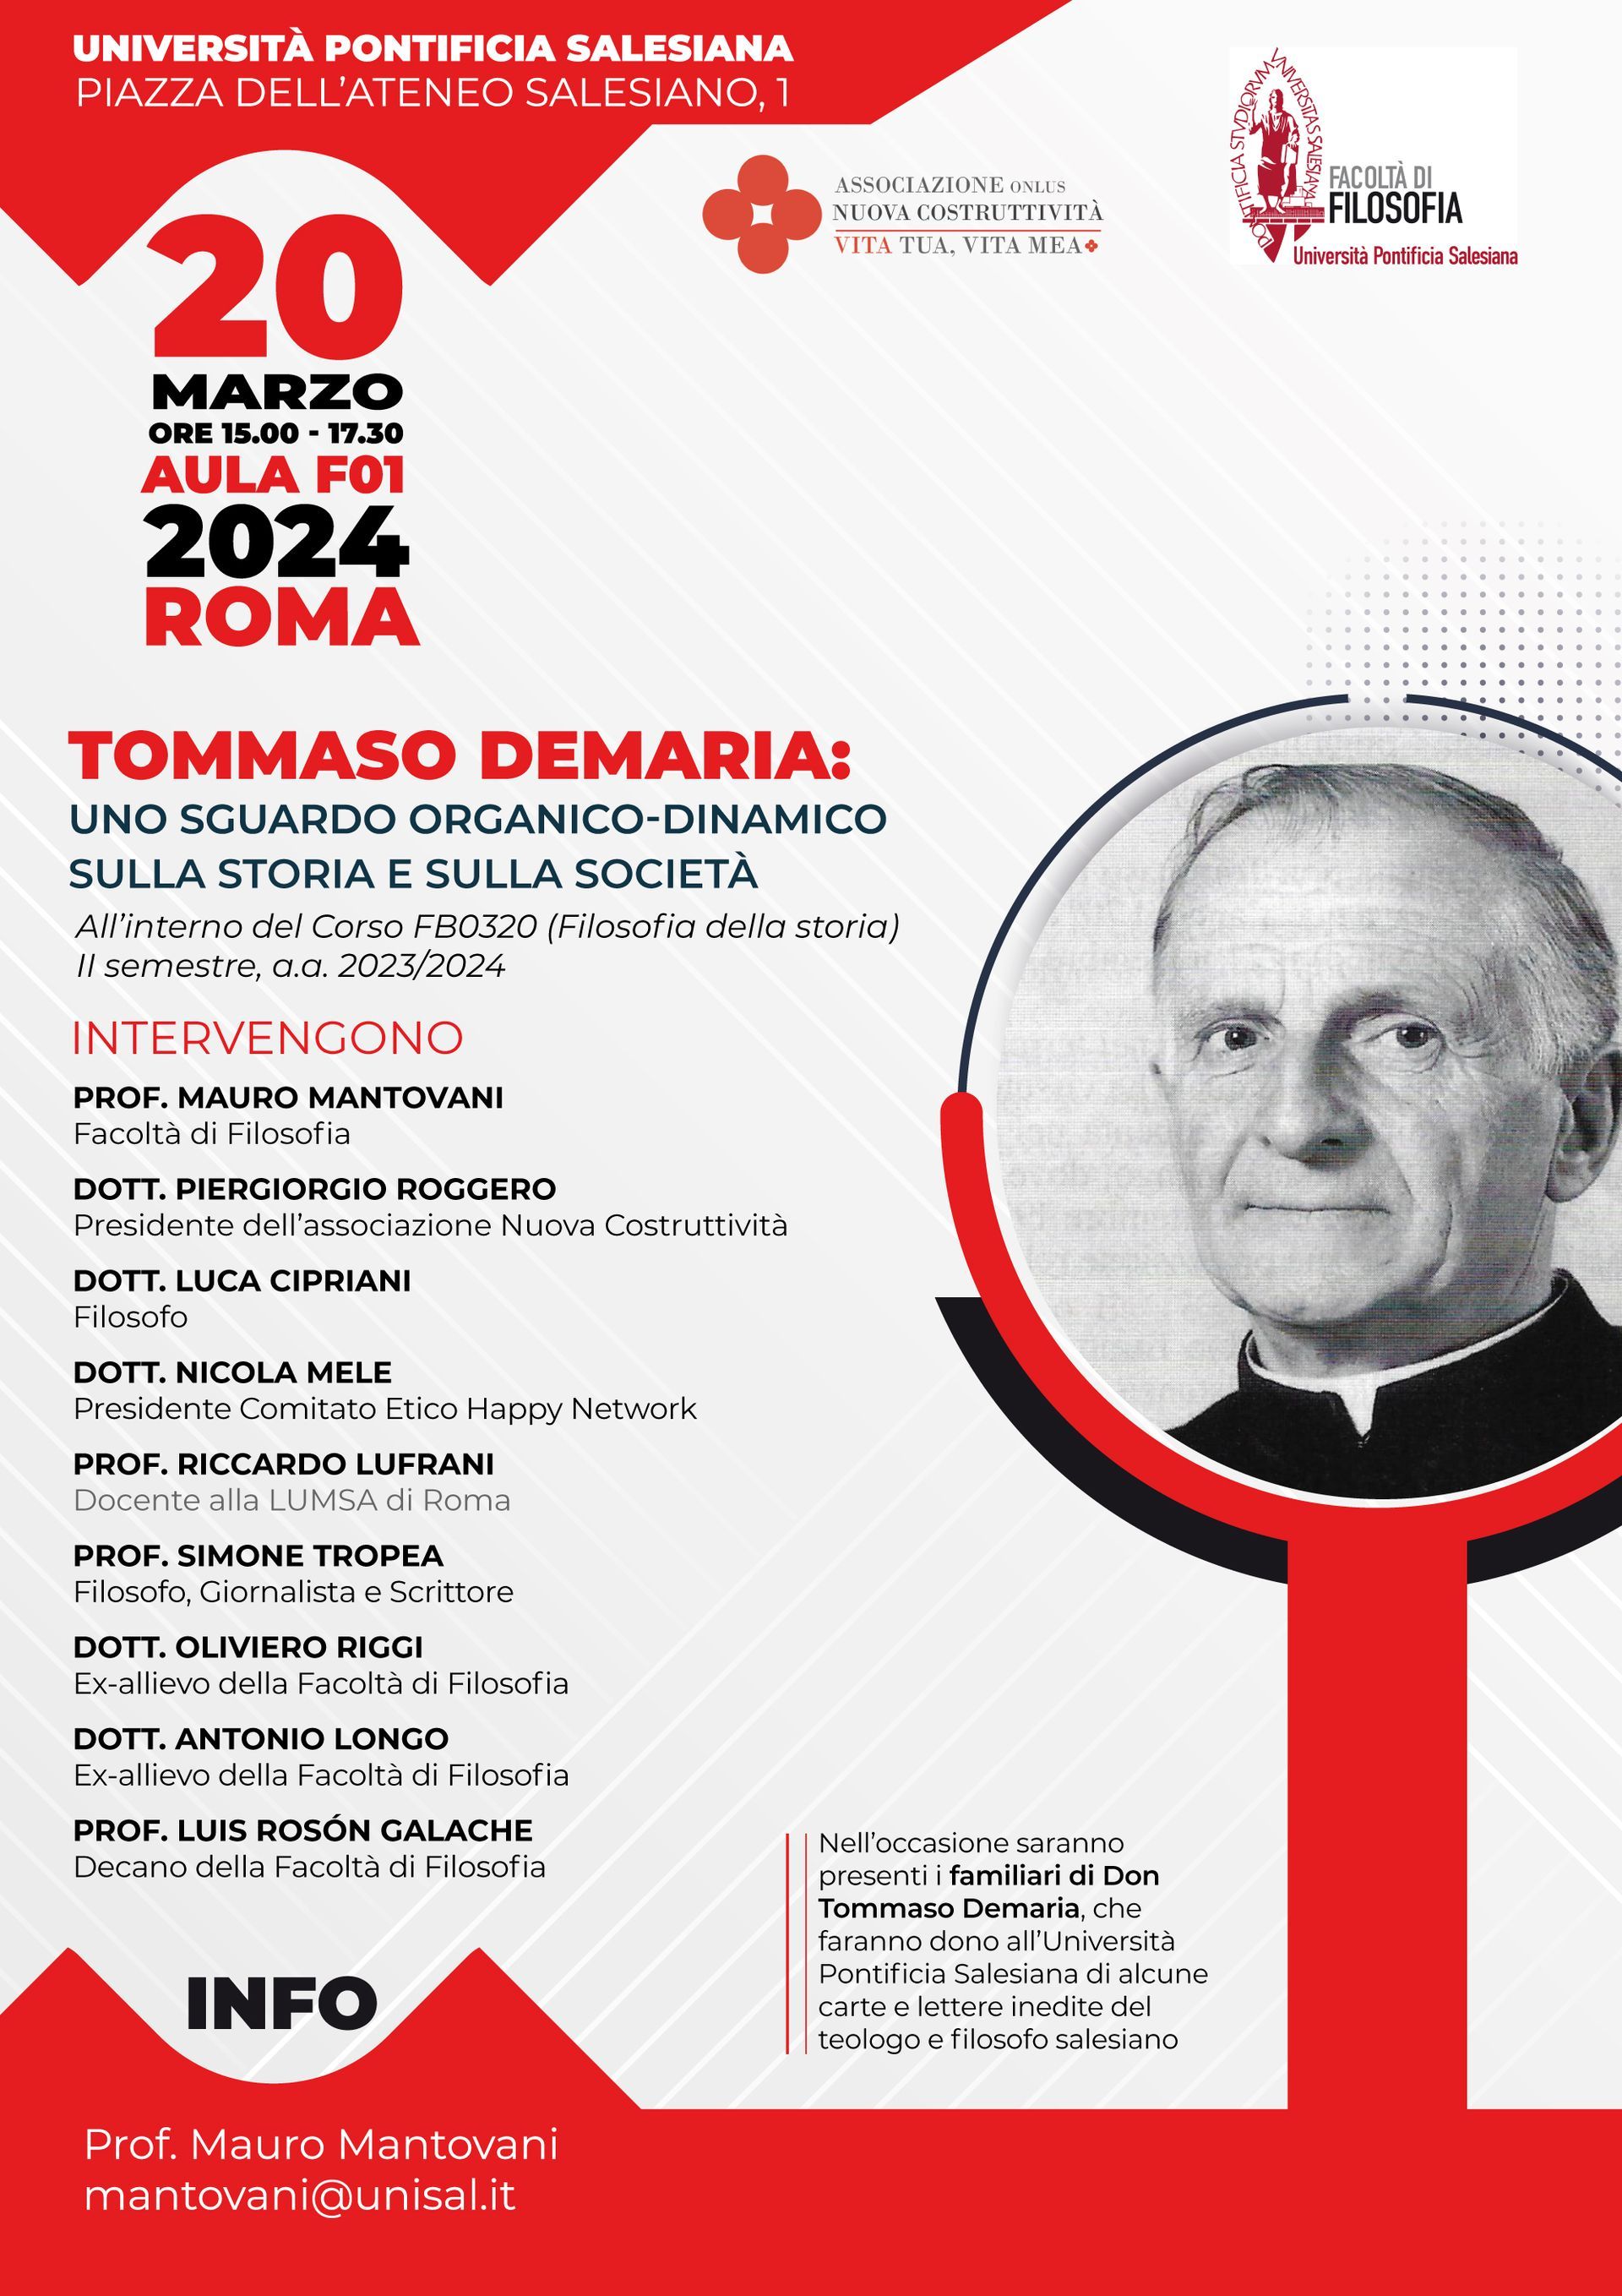 Tommaso Demaria-Uno sguardo organico-dinamico sulla storia e sulla società